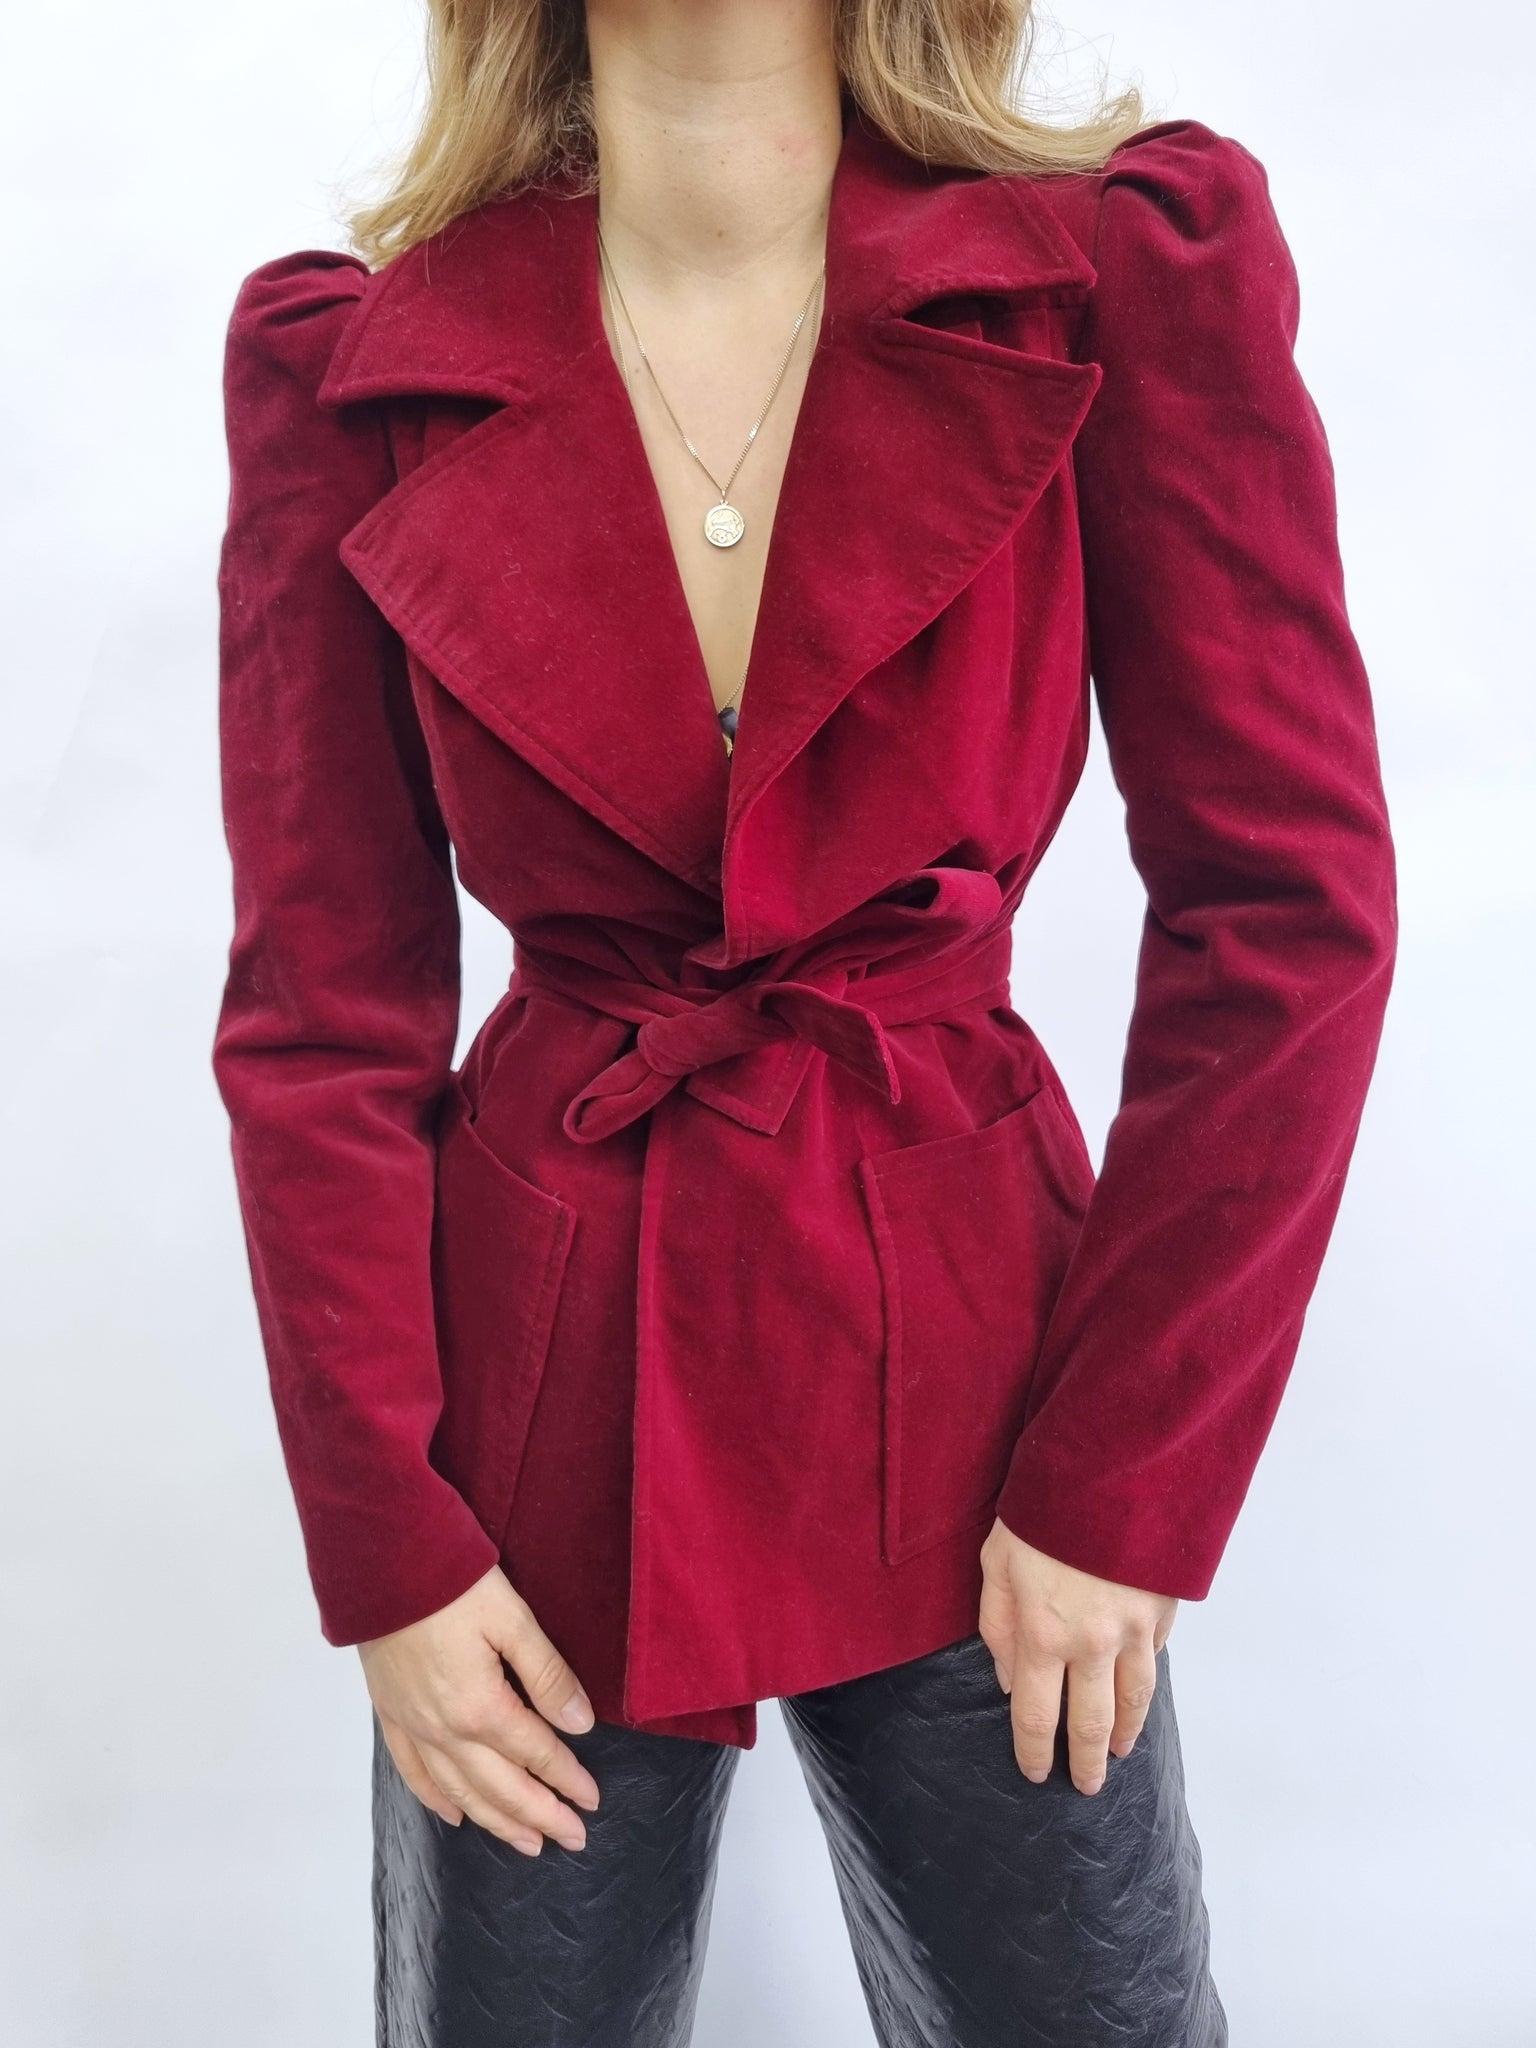 Vintage Red Velvet Puff Sleeves Jacket